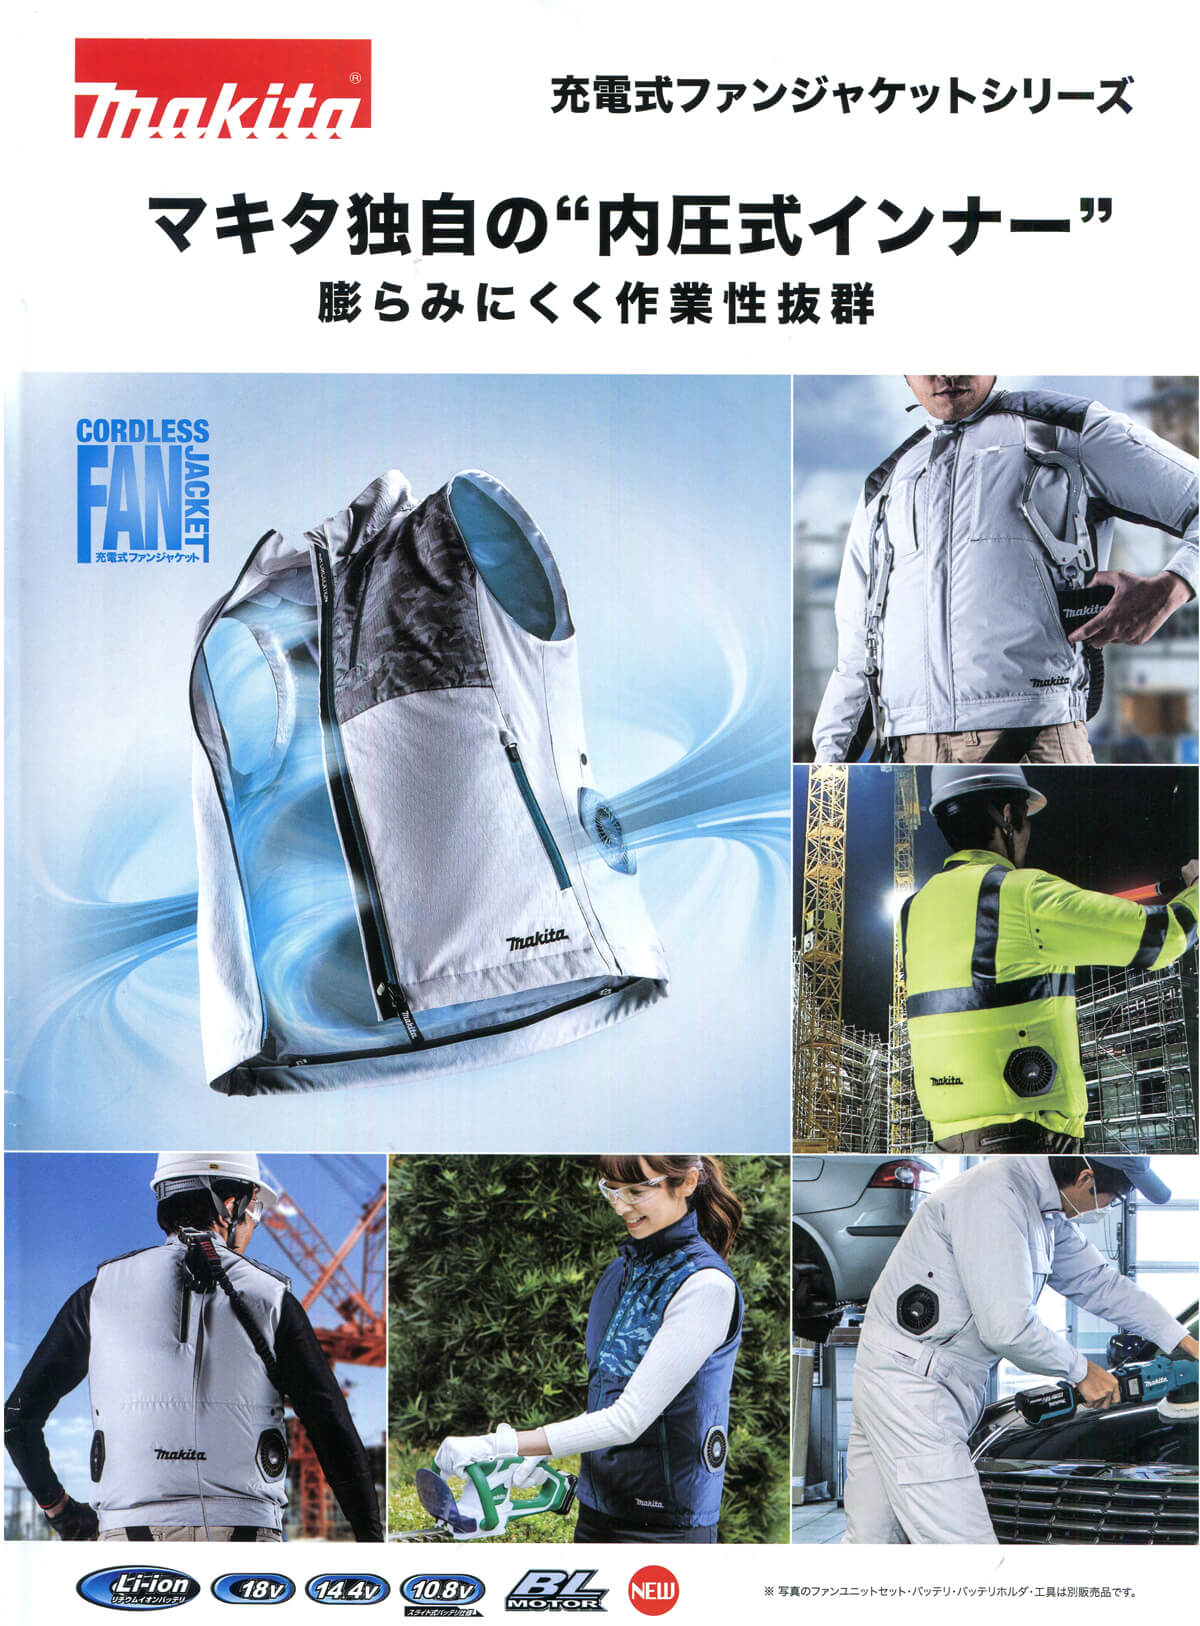 マキタ FJ310DZ ファンジャケット【2020年モデル】